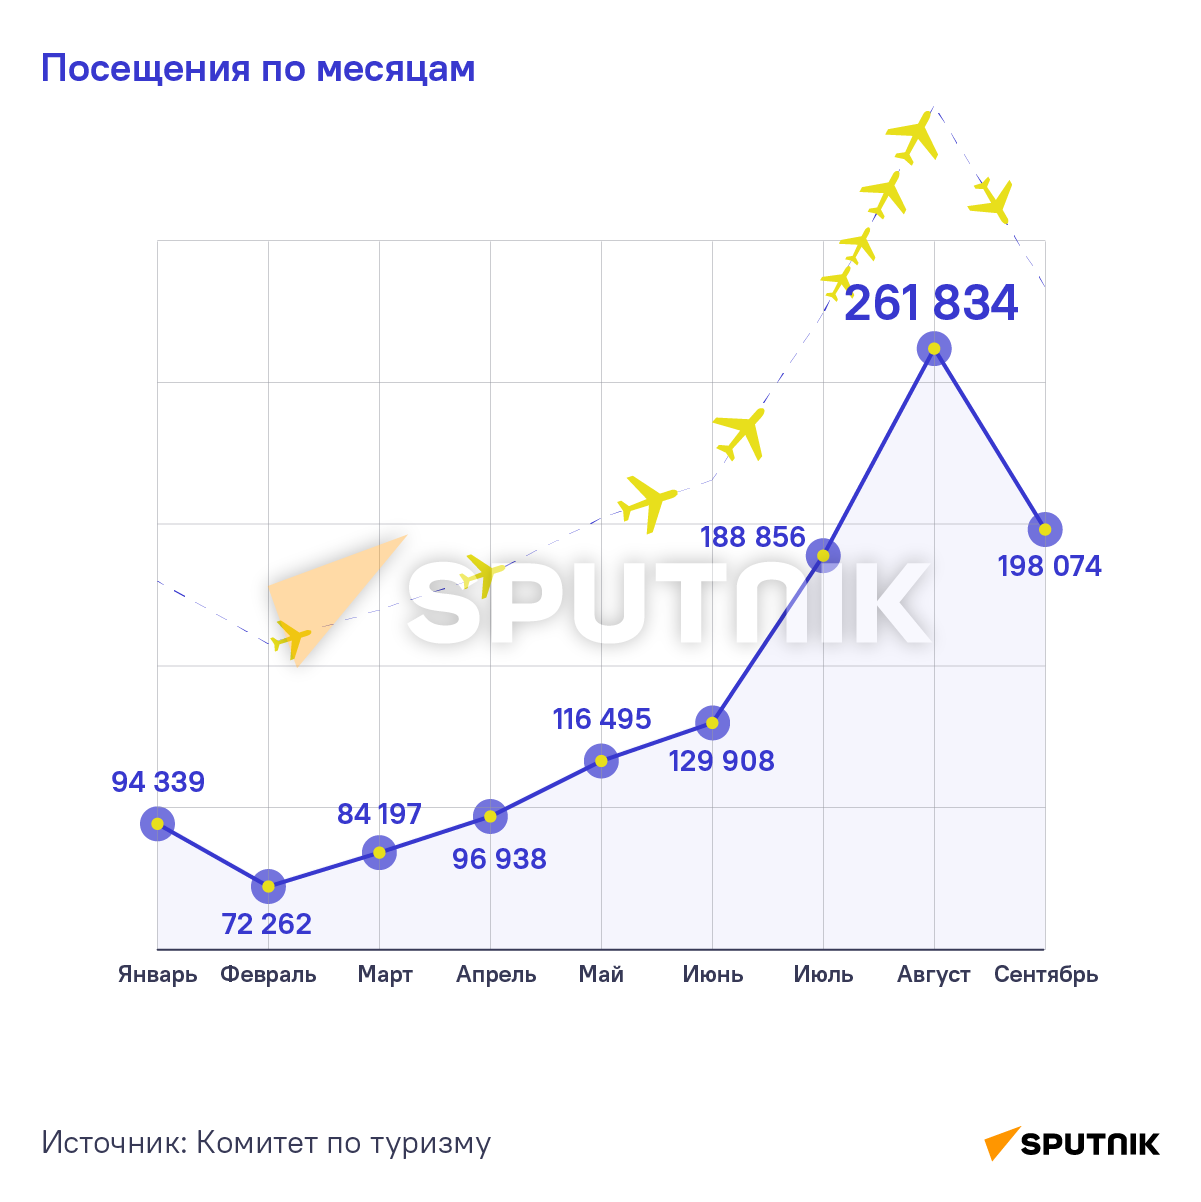 Сколько туристов посетило Армению в 2022 году - Sputnik Армения